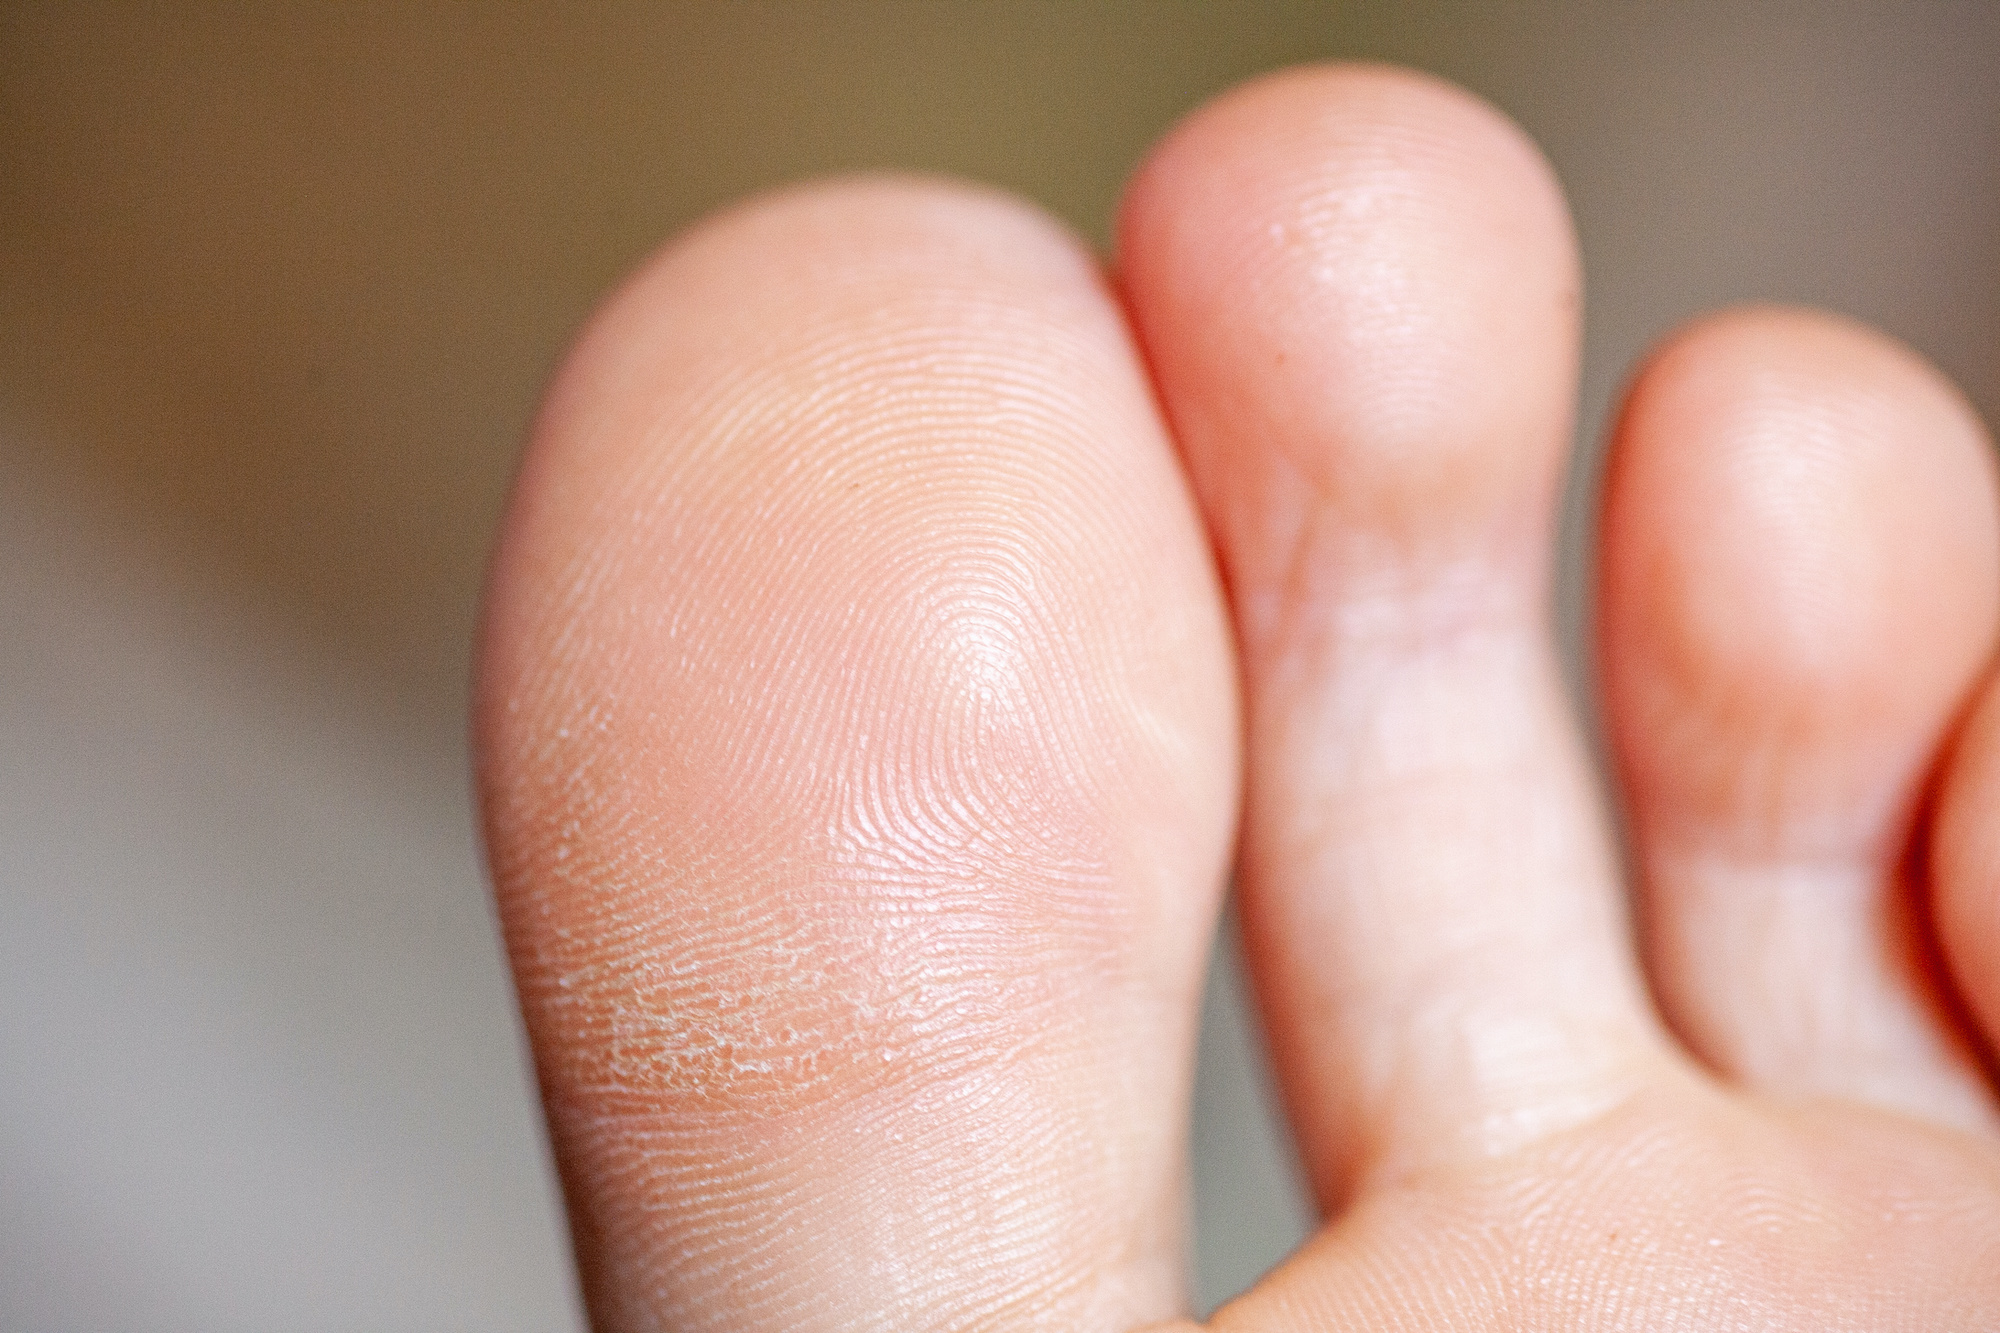 Comme les empreintes digitales de la main, celles des pieds sont uniques. © mironovm, Adobe Stock